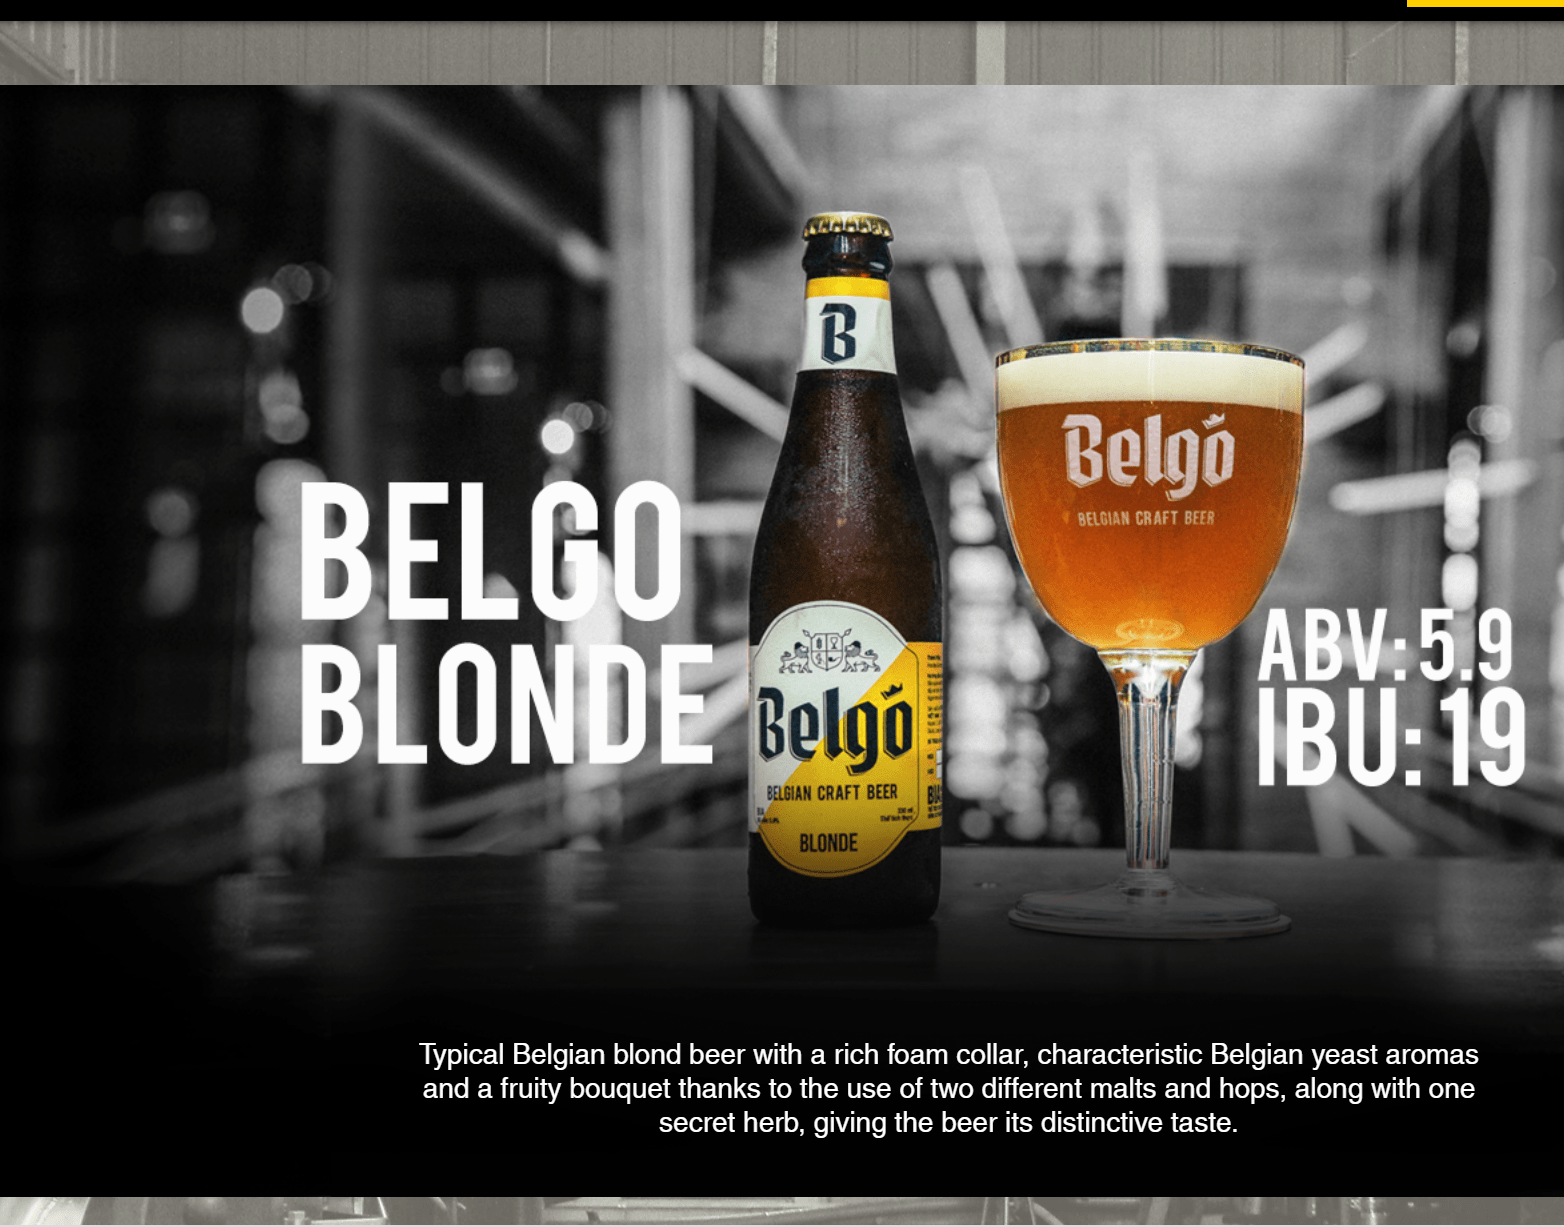 Belgo blond